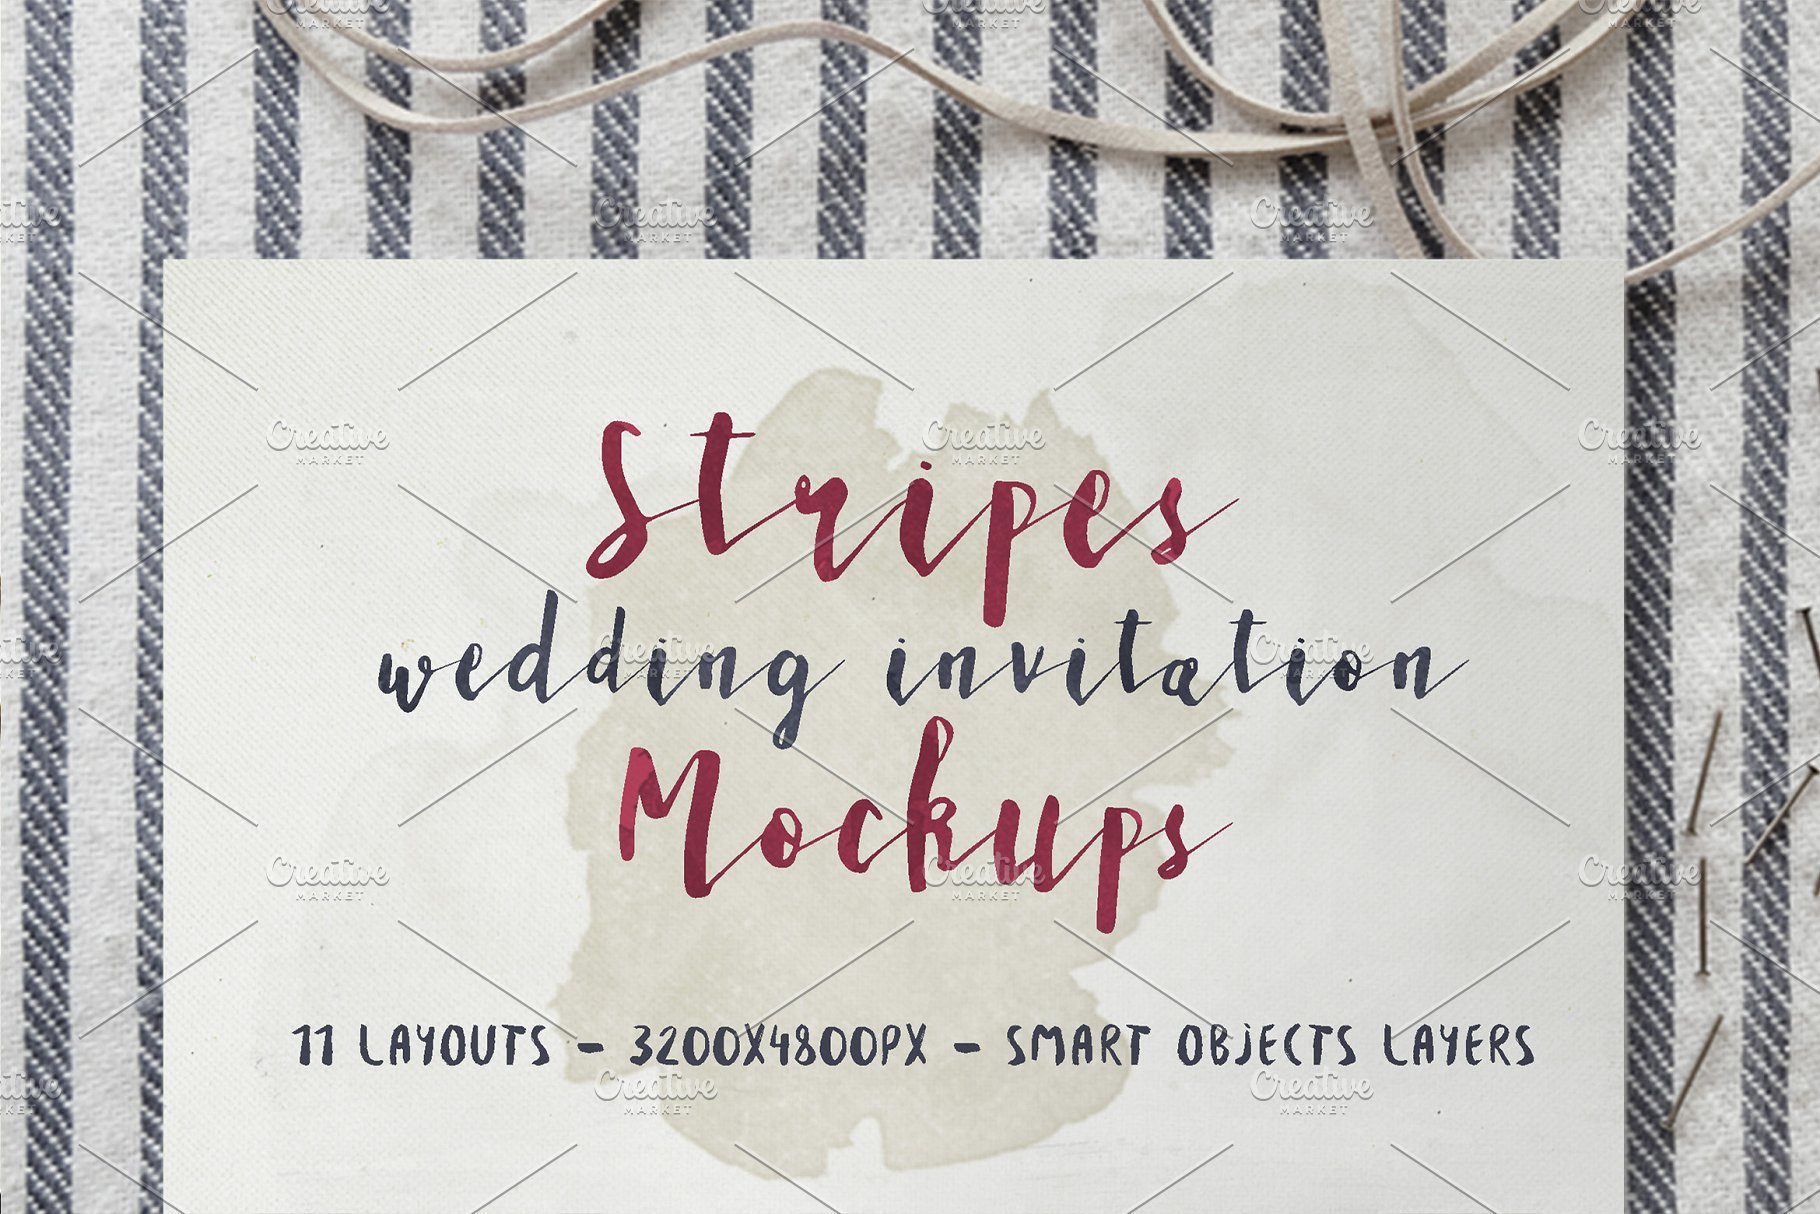 条纹风格婚礼设计物料样机模板 Stripes Wedding Invitation Mockups插图